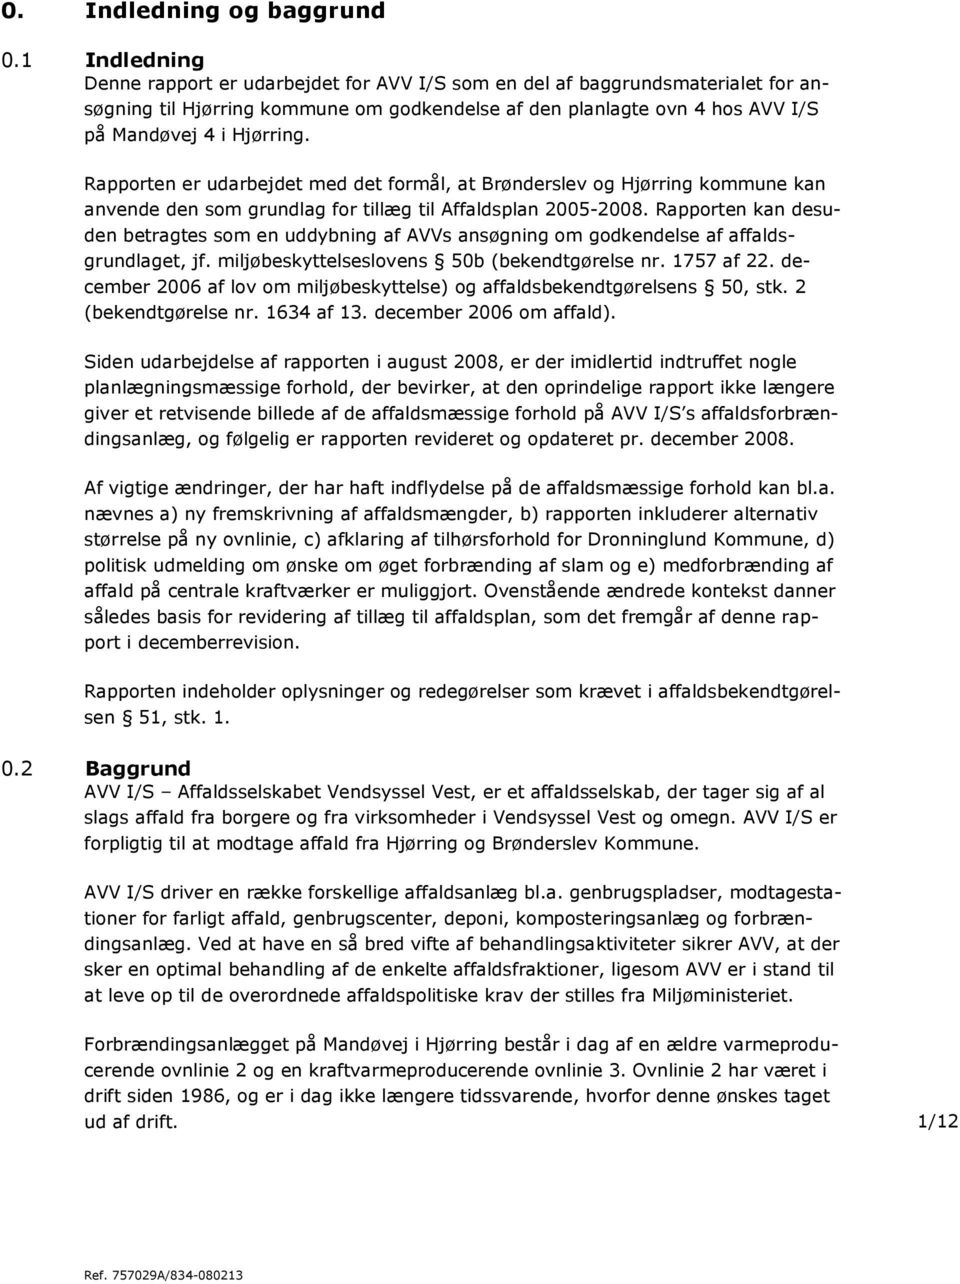 Rapporten er udarbejdet med det formål, at Brønderslev og Hjørring kommune kan anvende den som grundlag for tillæg til Affaldsplan 2005-2008.